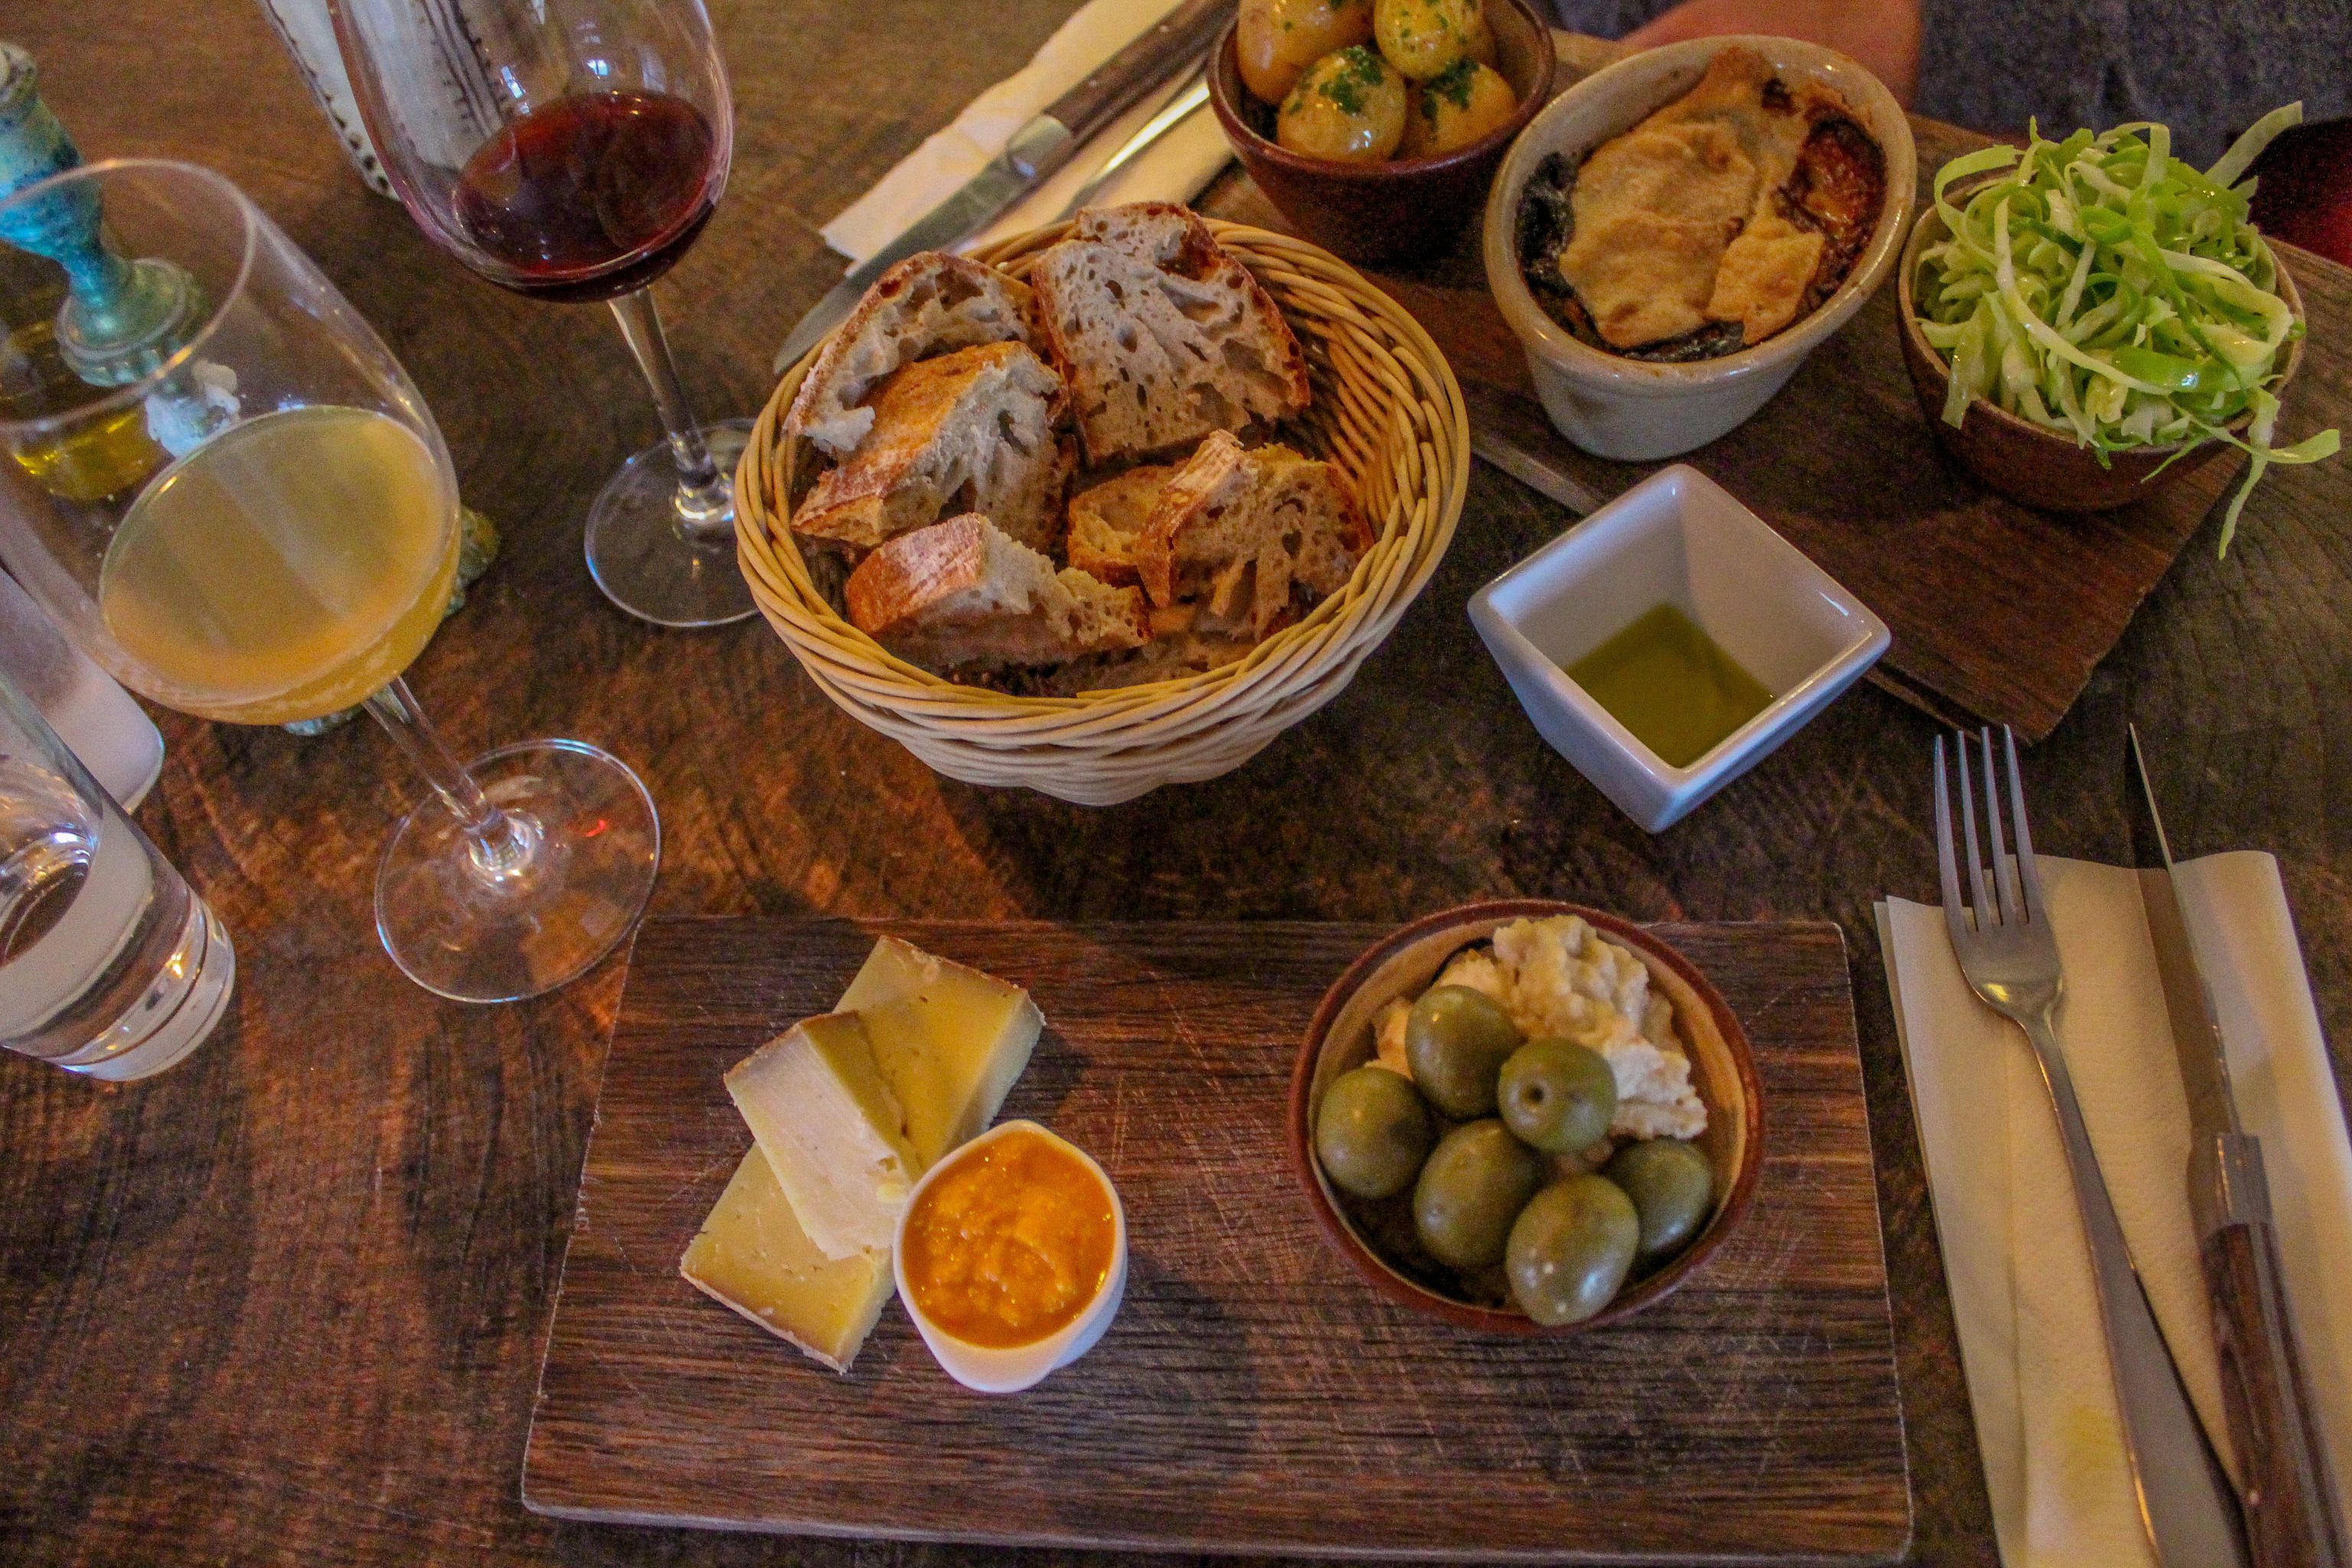 Vinbaren Provianten i Gudhjem er en ud af mange gode restauranter og spisesteder på Bornholm